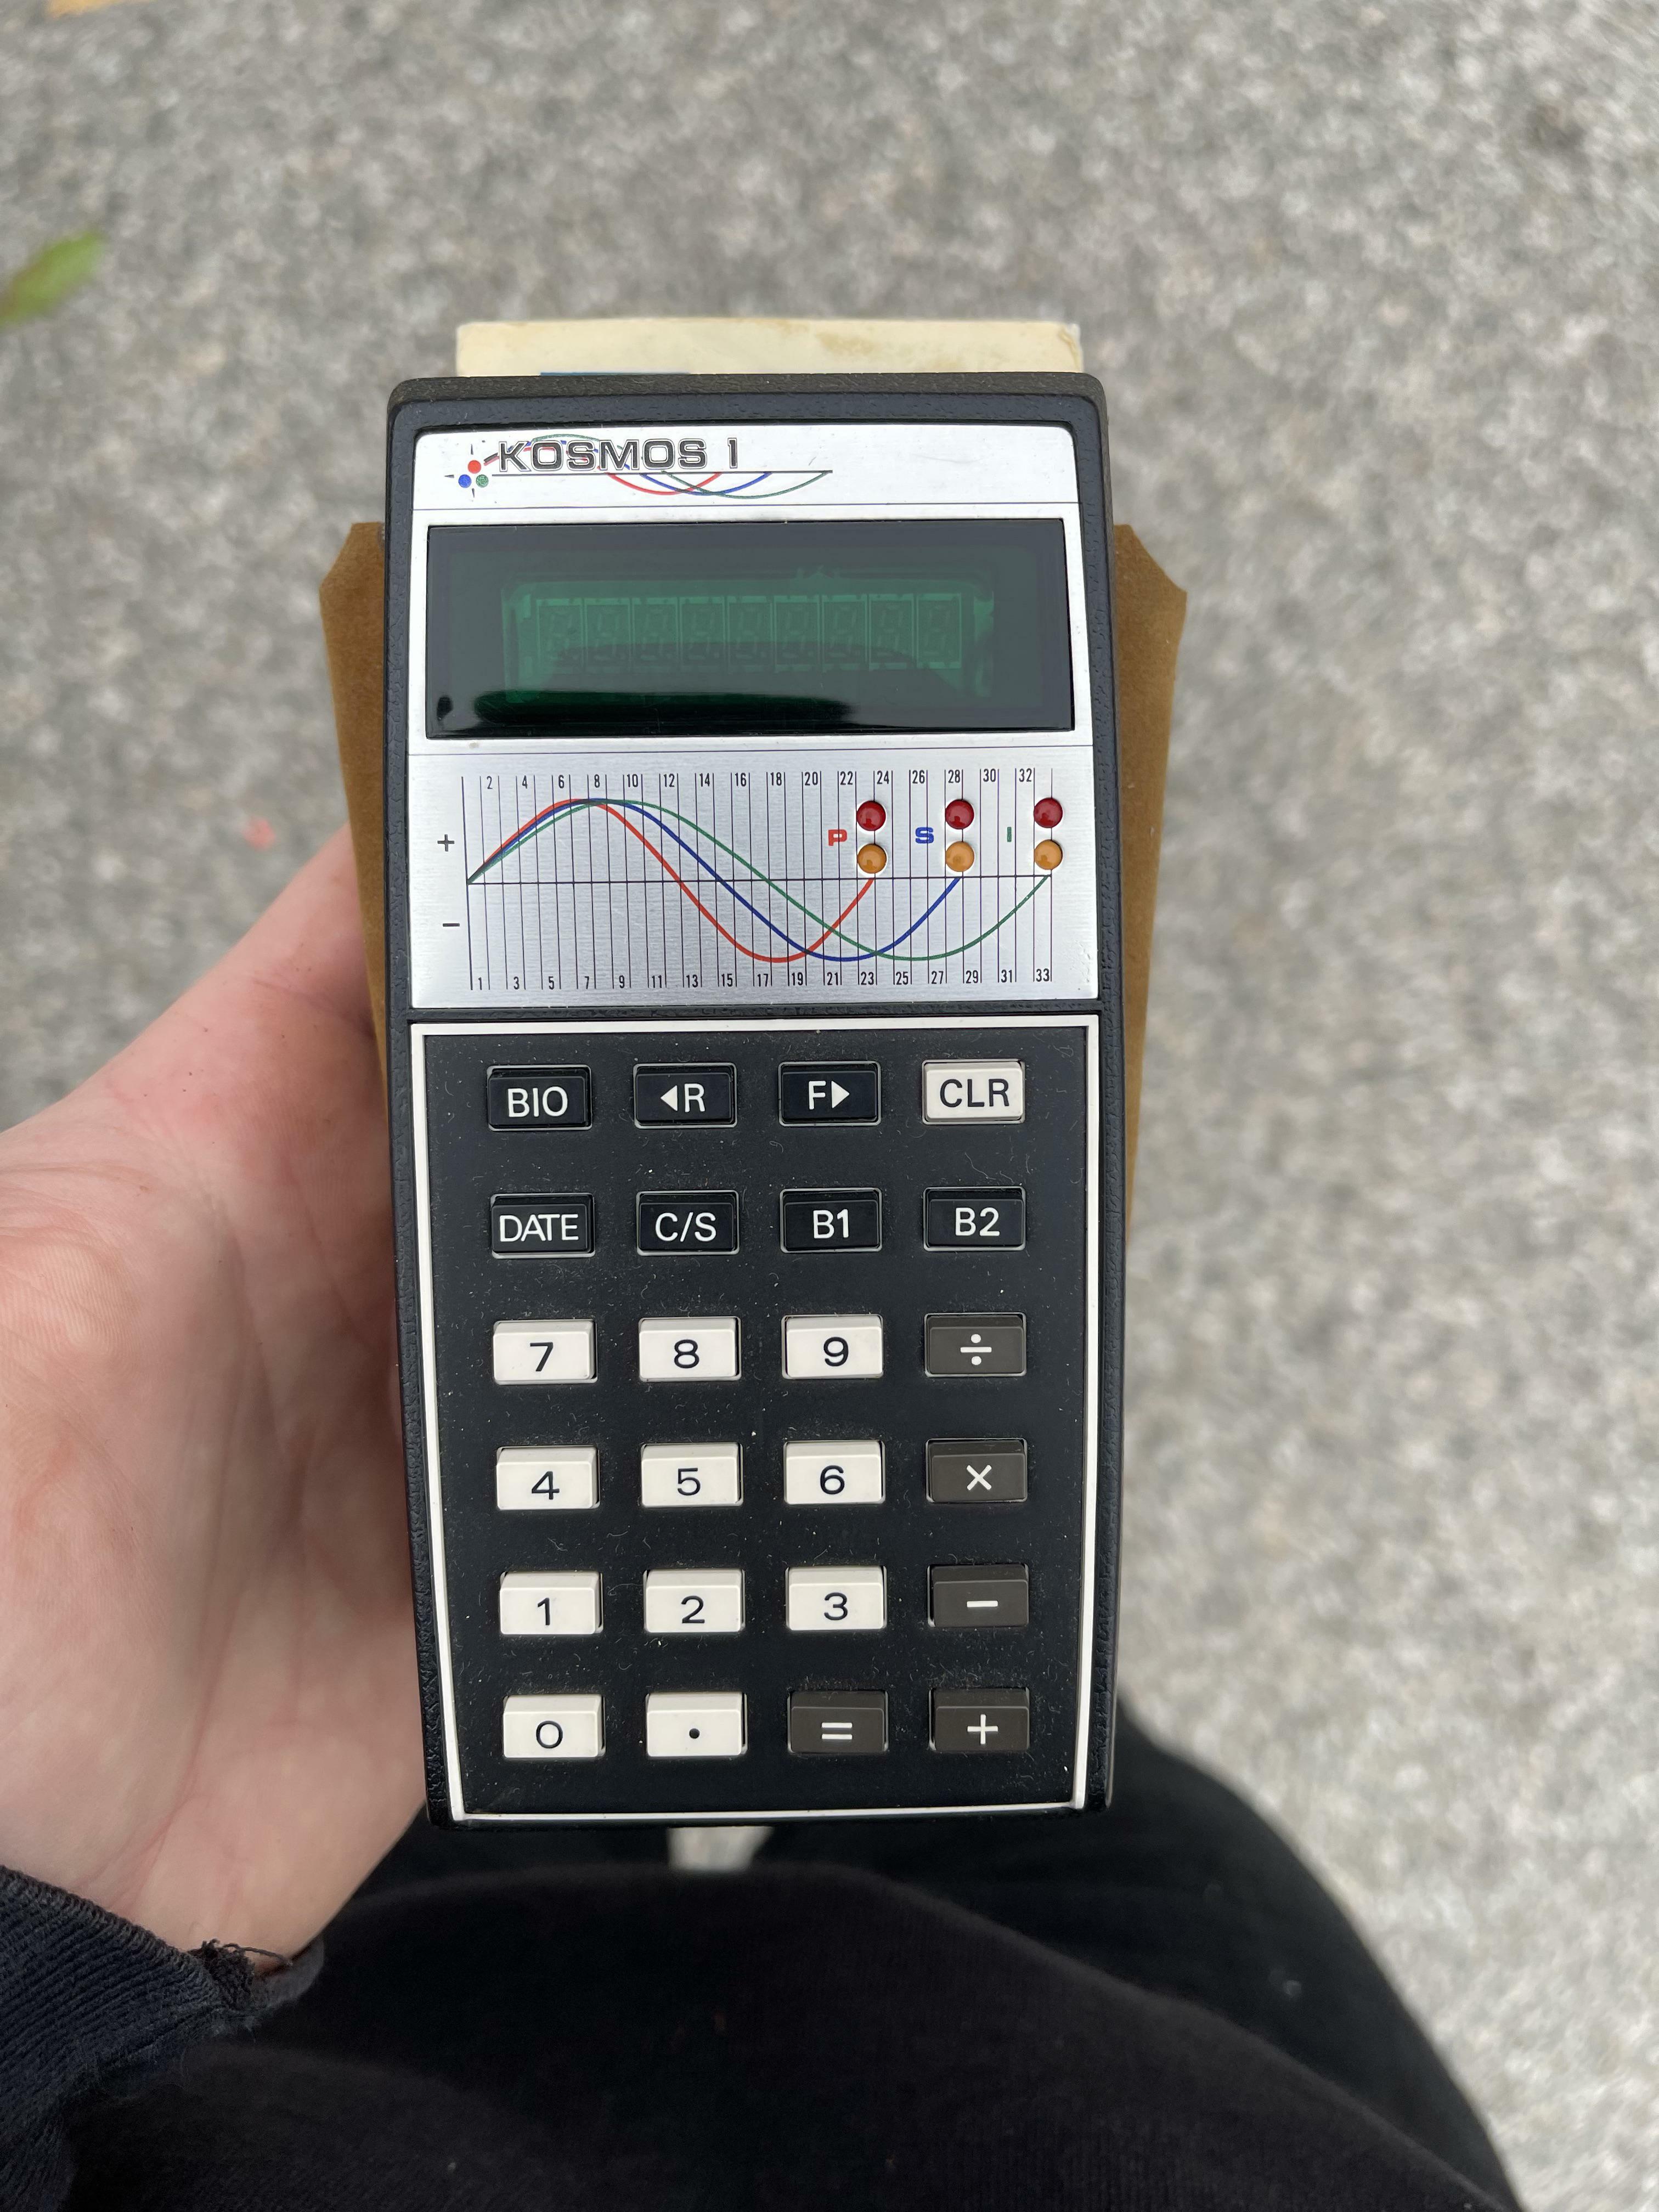 mon calculateur de biorythme de poche kosmos 1 de 1977. 46 ans de calculs